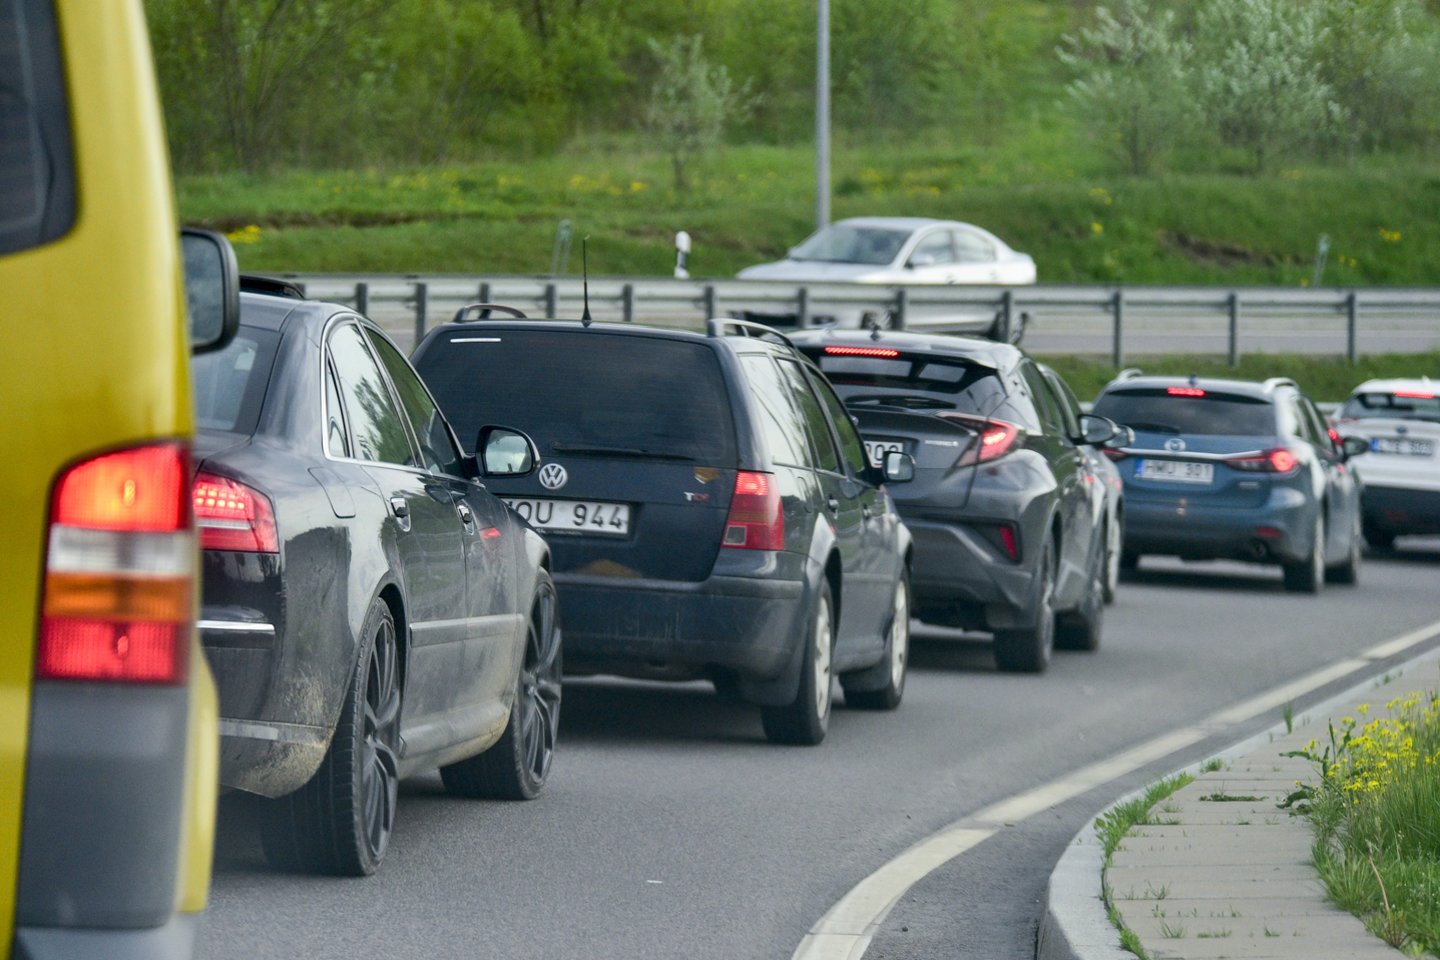 Pirmą kartą Lietuvoje įregistruotų naudotų automobilių vidutinis amžius siekė 11,1 metų.<br>V.Ščiavinsko nuotr.